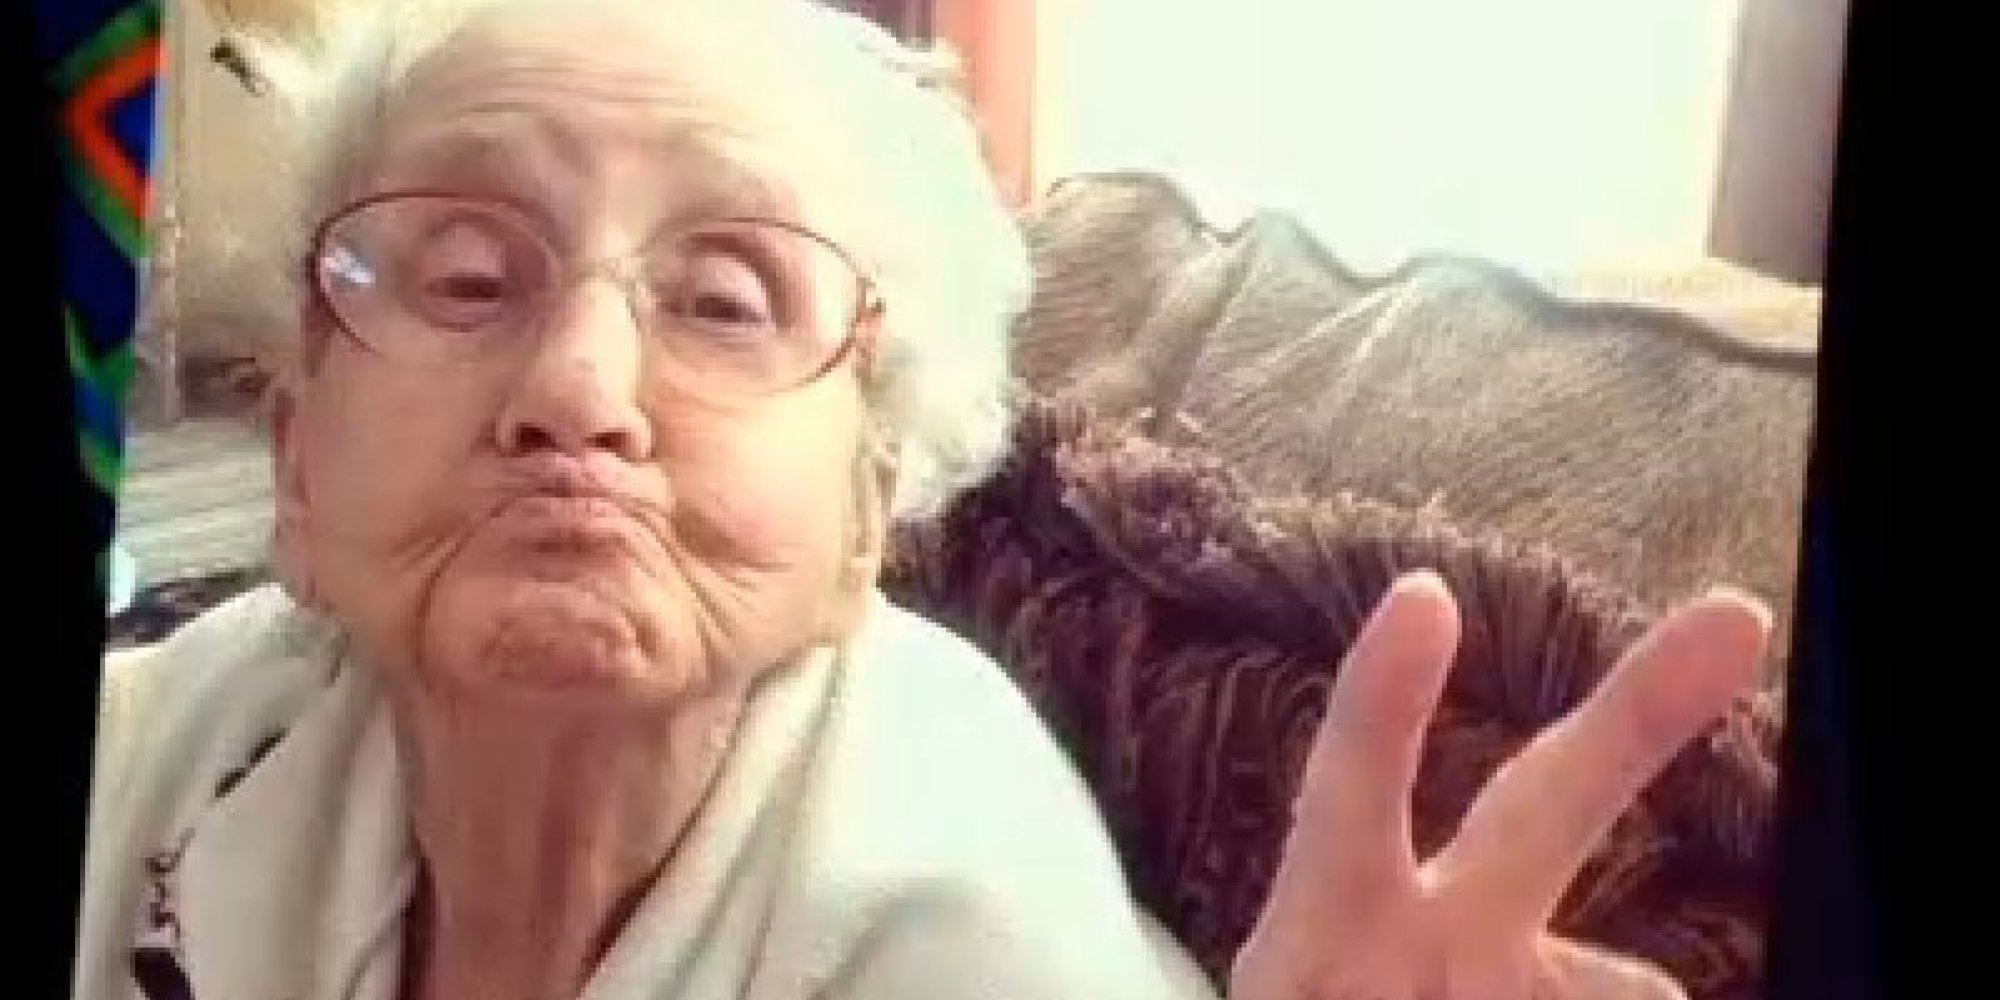 Grandma Bettys Bittersweet Instagram Reveals Heartbreaking Reality Of 